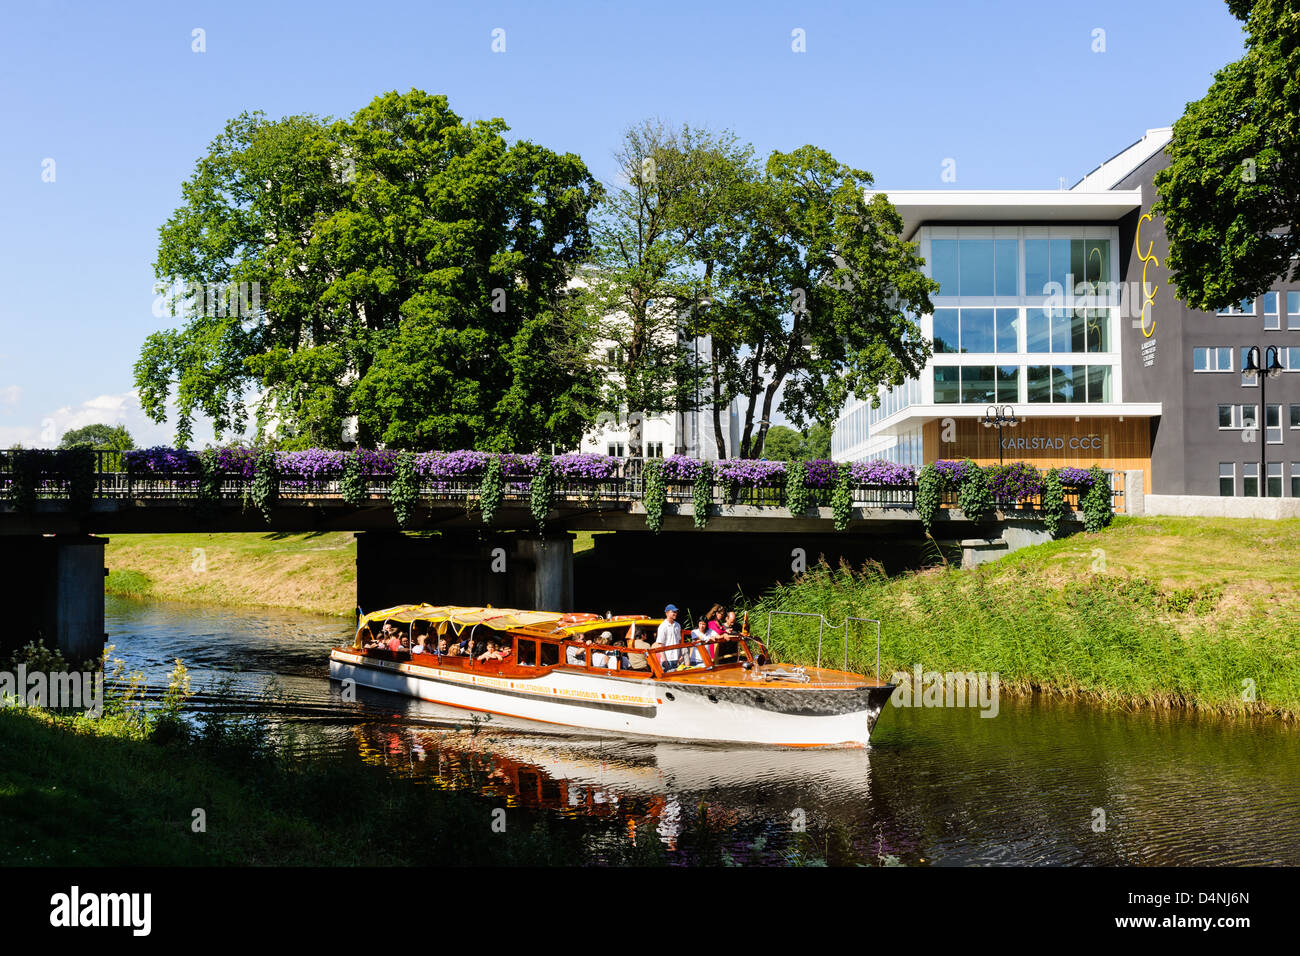 Touristenboot auf Kanal in Karlstad, außerhalb von Karlstad Kultur Kongresszentrum, Värmland, Schweden, Europa Stockfoto